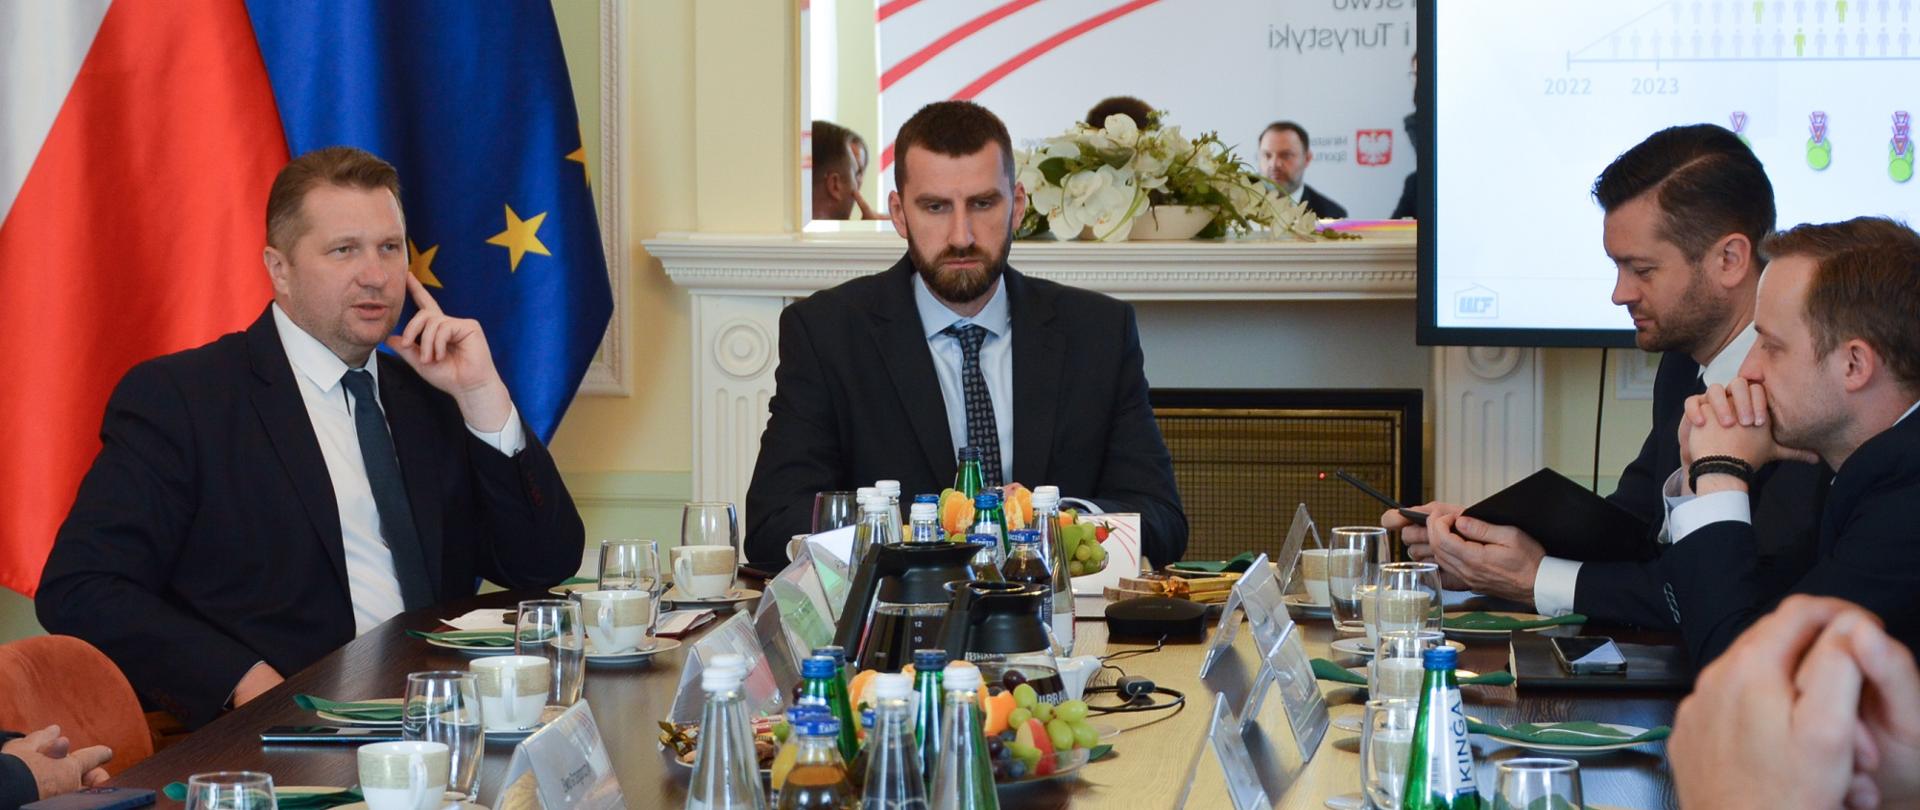 Uczestnicy spotkania siedzą i rozmawiają przy stole, za nimi flagi Polski i UE oraz duży ekran.